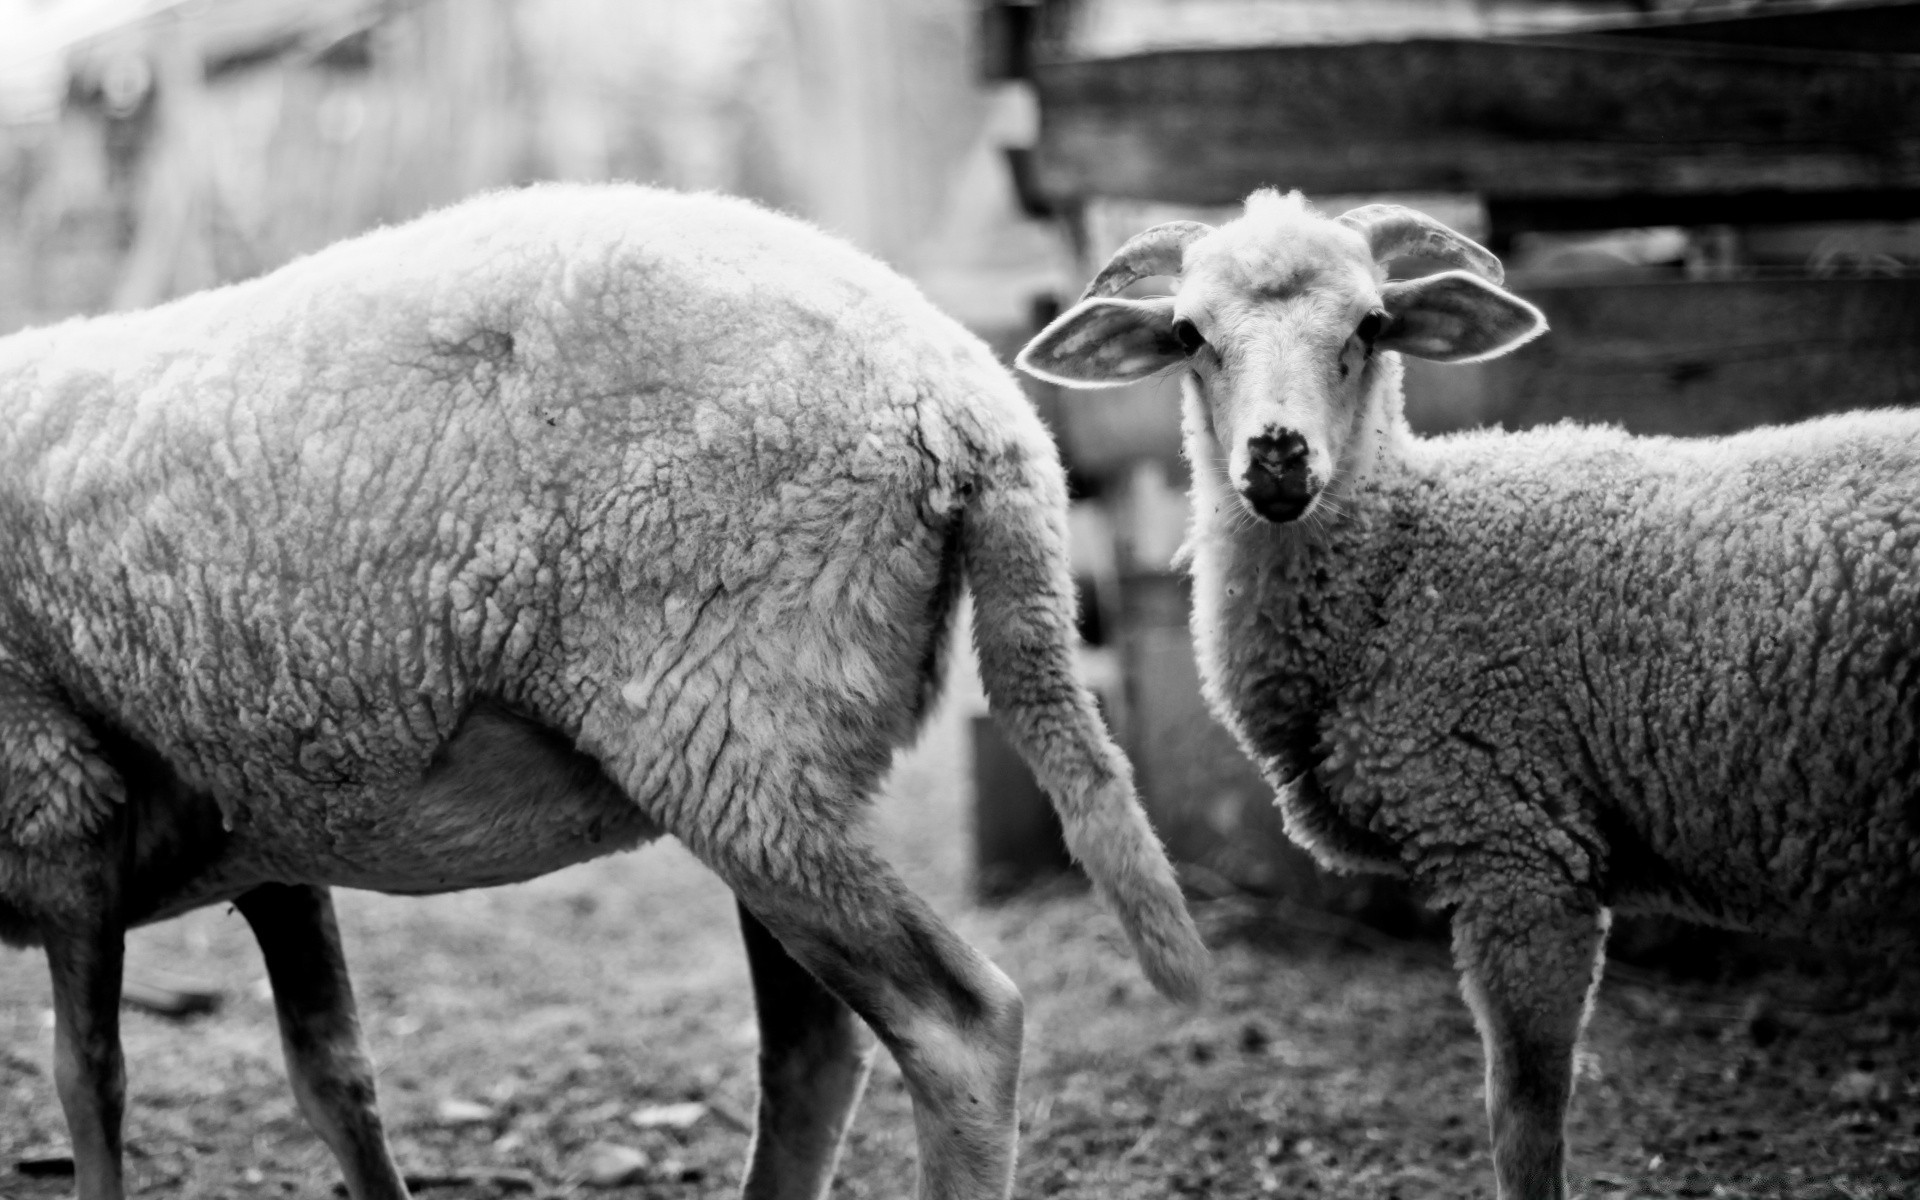 черно-белое овцы живыми животными млекопитающее шерсть сельское хозяйство ферма баранина эве пастбище животное сельских коза крупный рогатый скот озу стадо хлопьевидный сельской местности трава